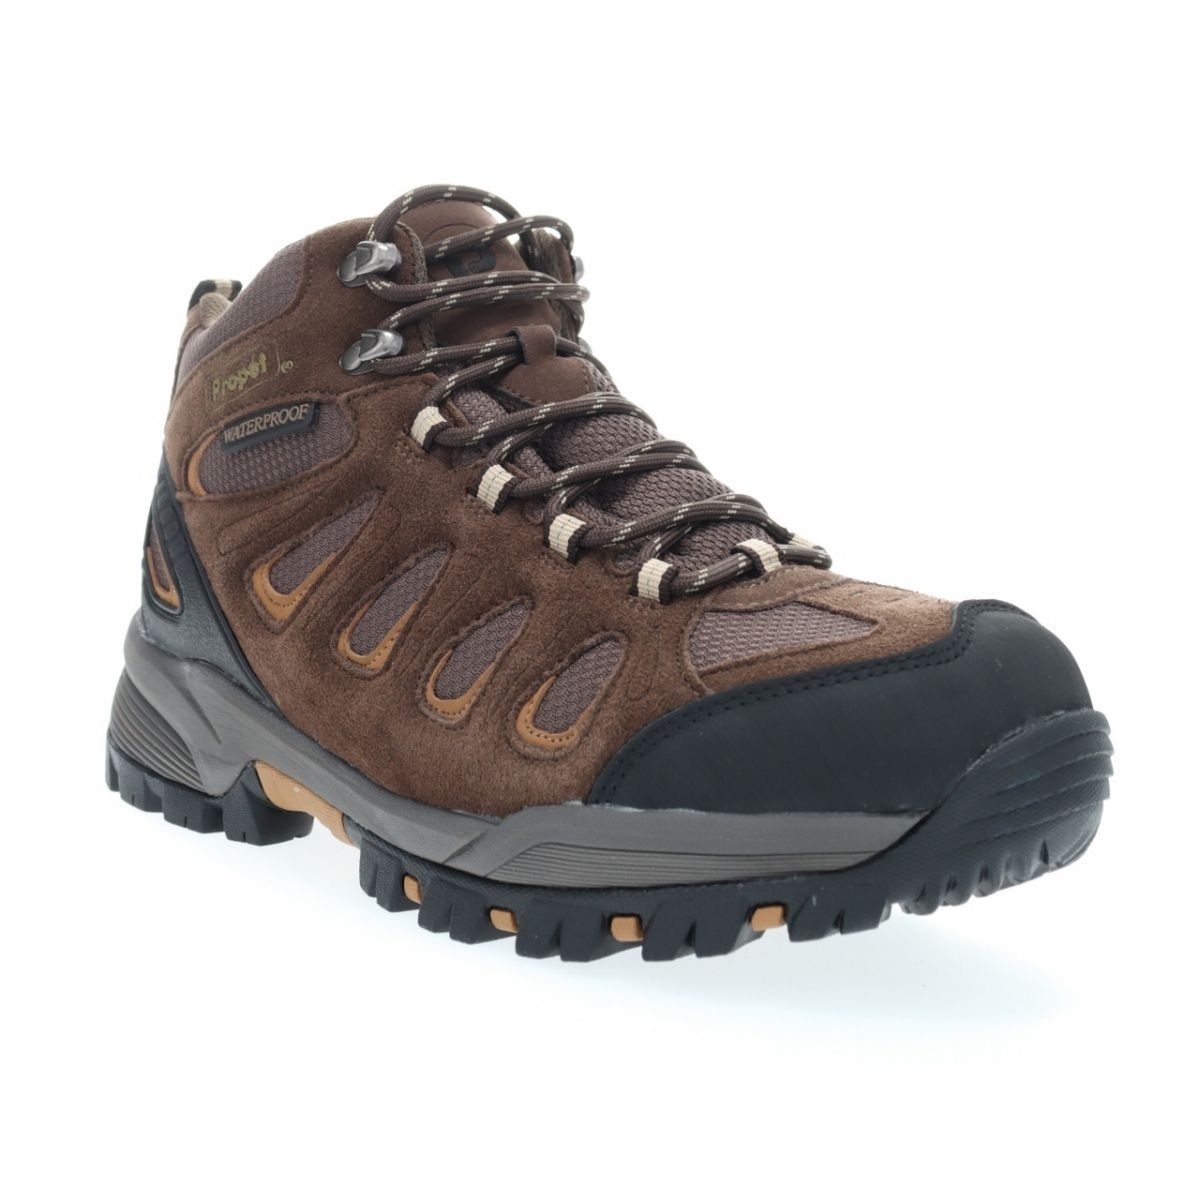 Propet Men's Ridge Walker Hiking Boot Brown - M3599BR 8 XX US Men BROWN - BROWN, 10 XX-Wide